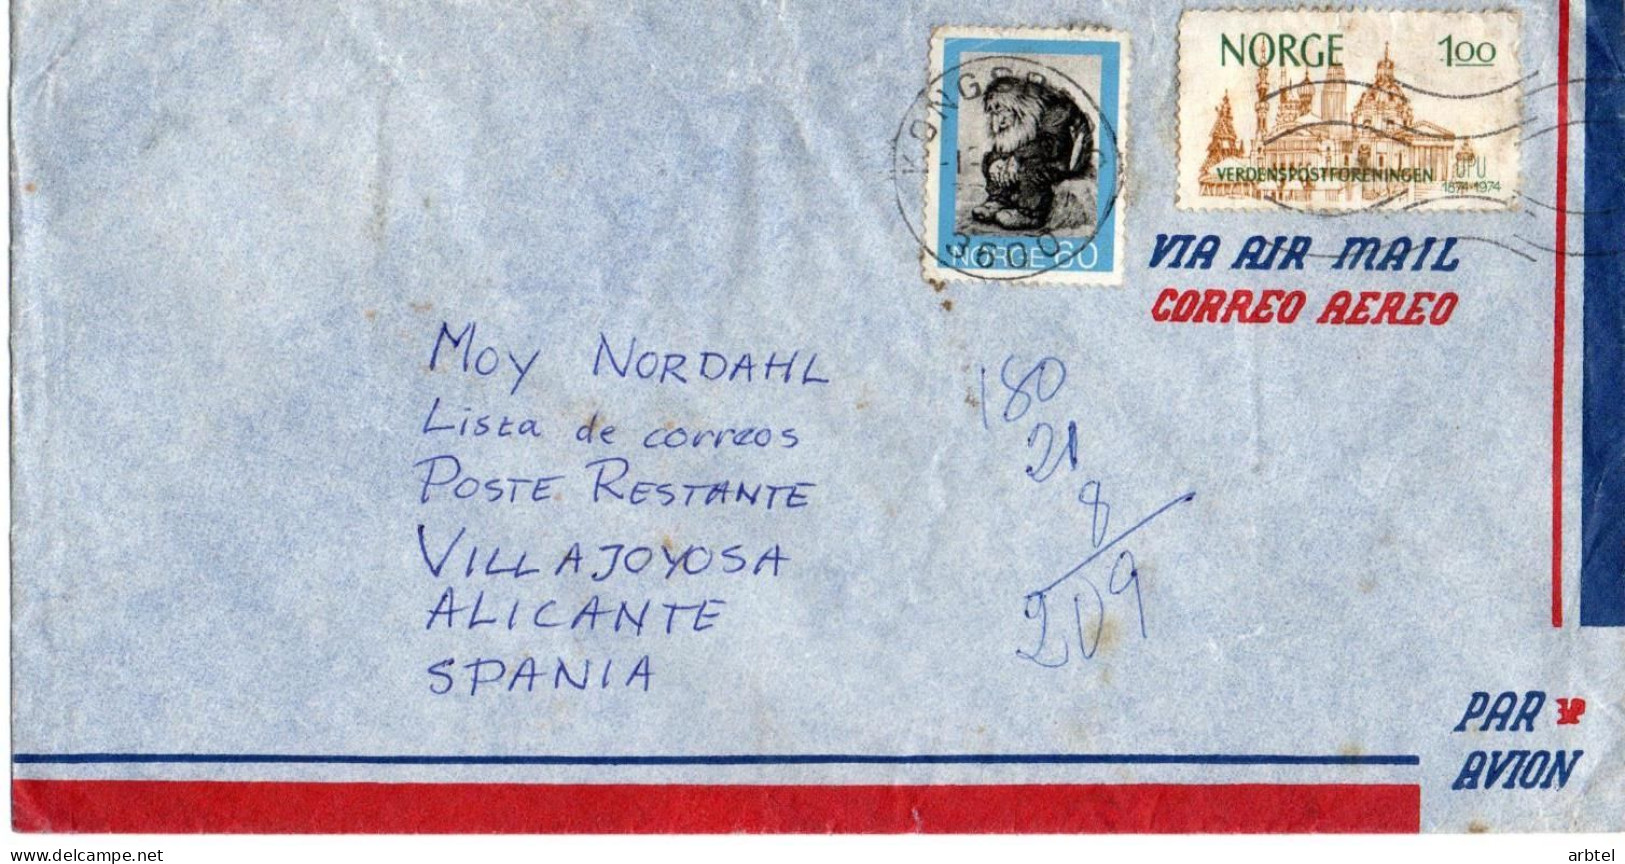 NORUEGA CC 1975 ARQUITECTURA - Chiese E Cattedrali